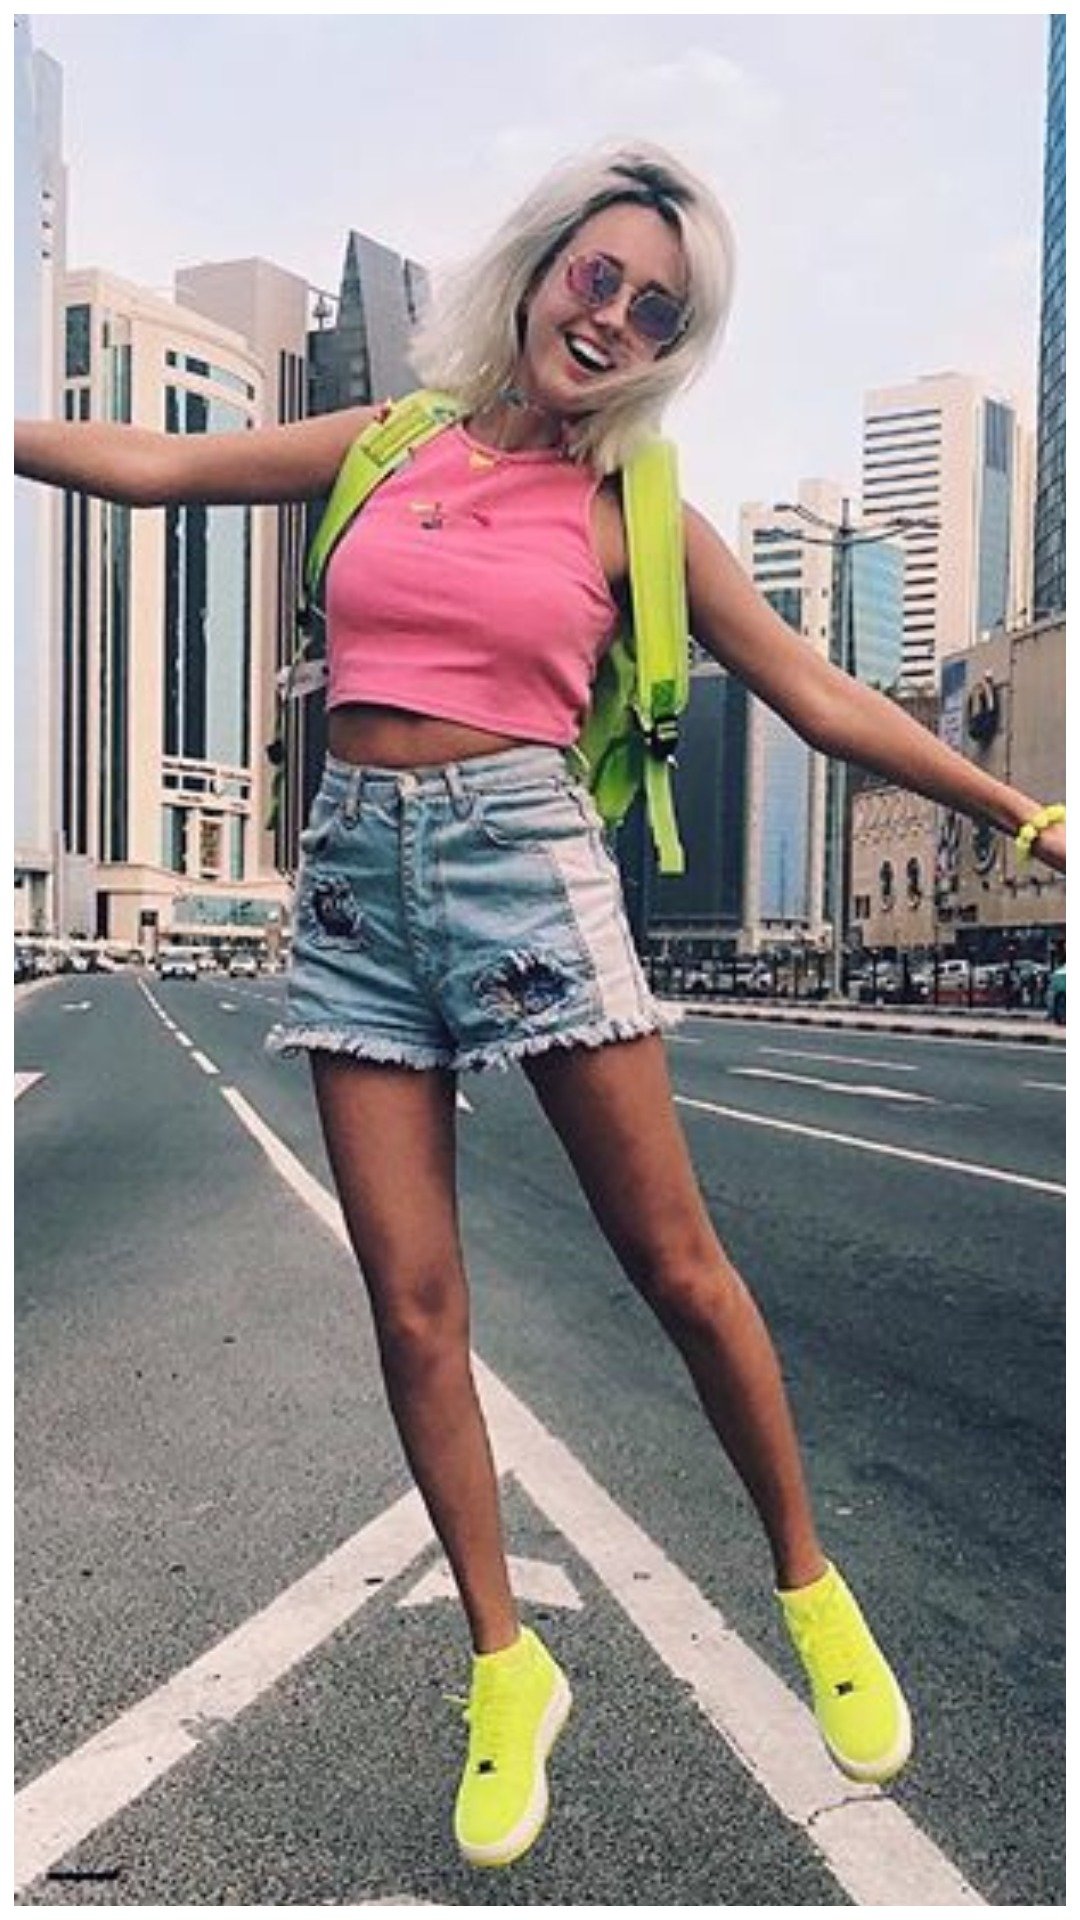 Клава Кока, восхитительная красавица, смело демонстрирует свои восхитительные ножки, украсив каждое фото